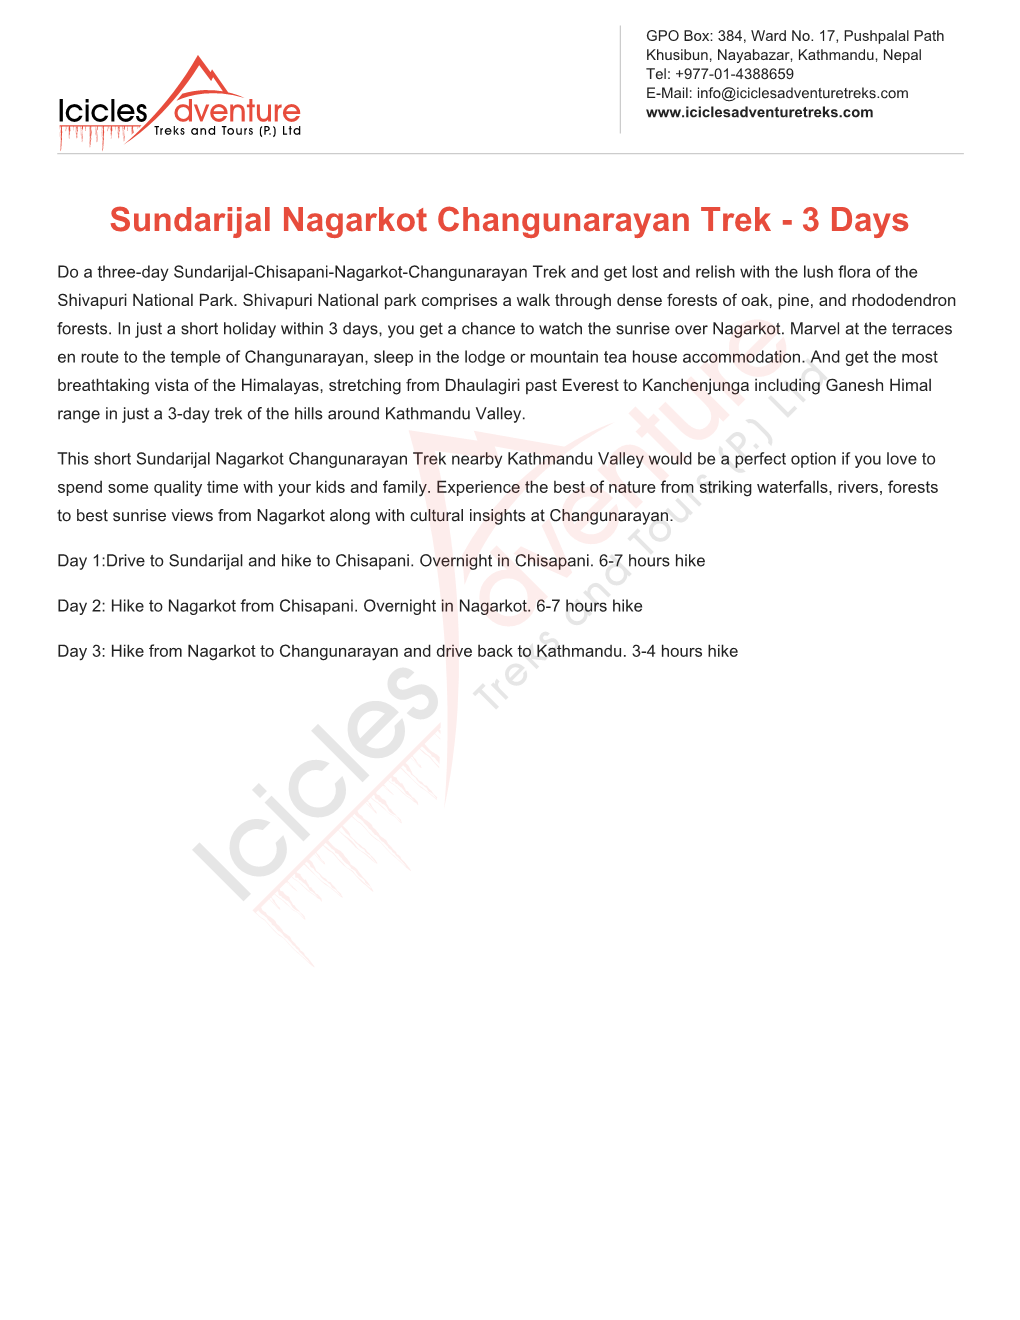 Sundarijal Nagarkot Changunarayan Trek - 3 Days